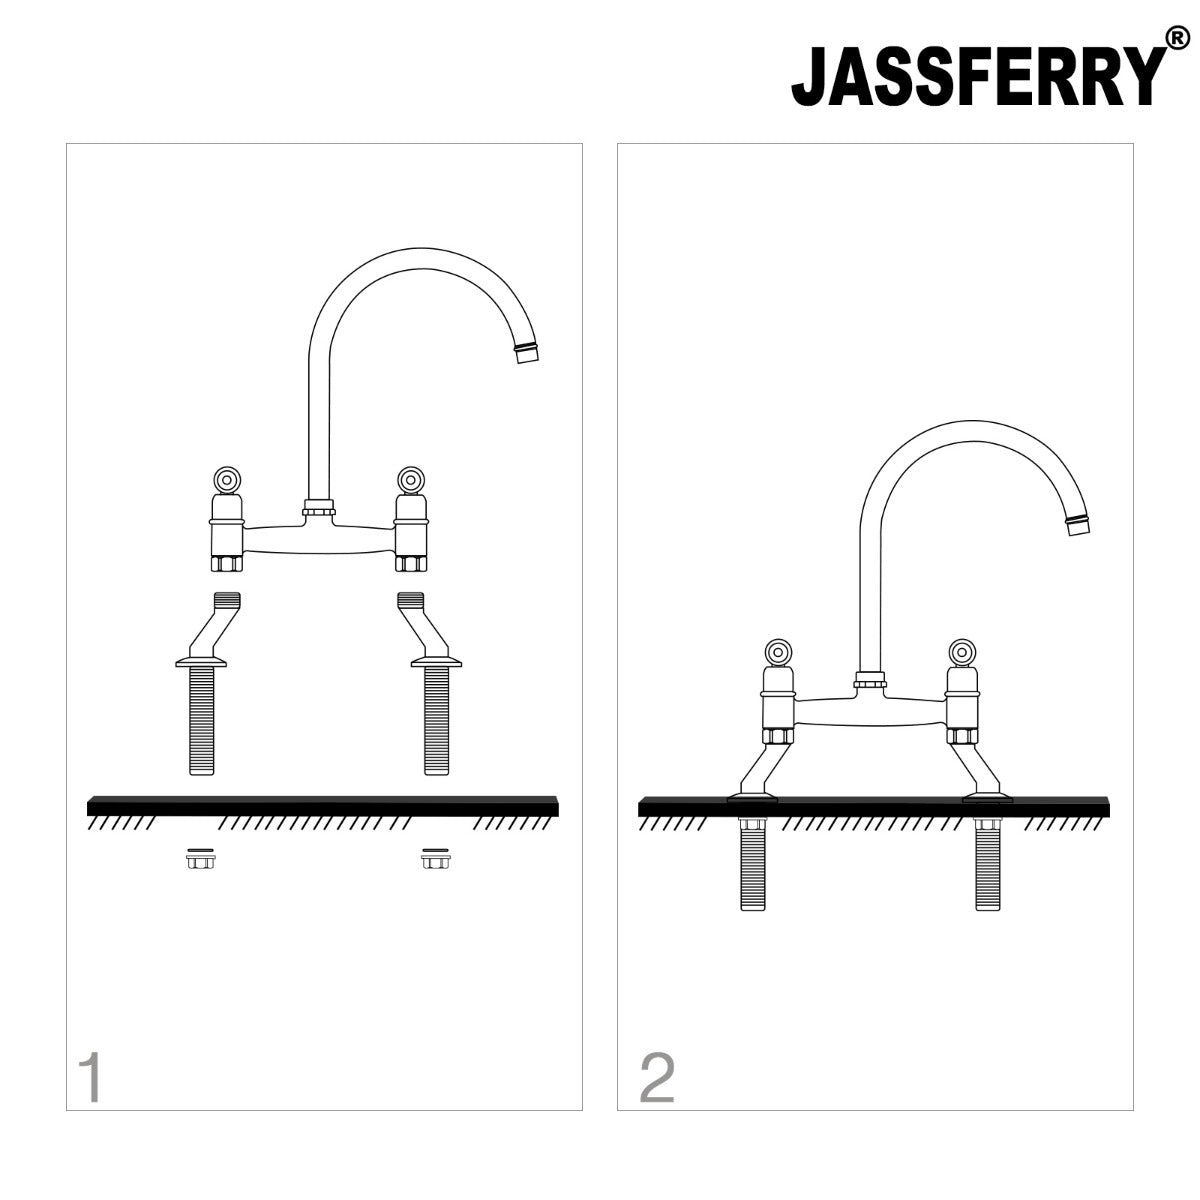 JassferryJASSFERRY 2 Hole Kitchen Mixer tap Chrome with Swivel Spout Bridge TapKitchen taps